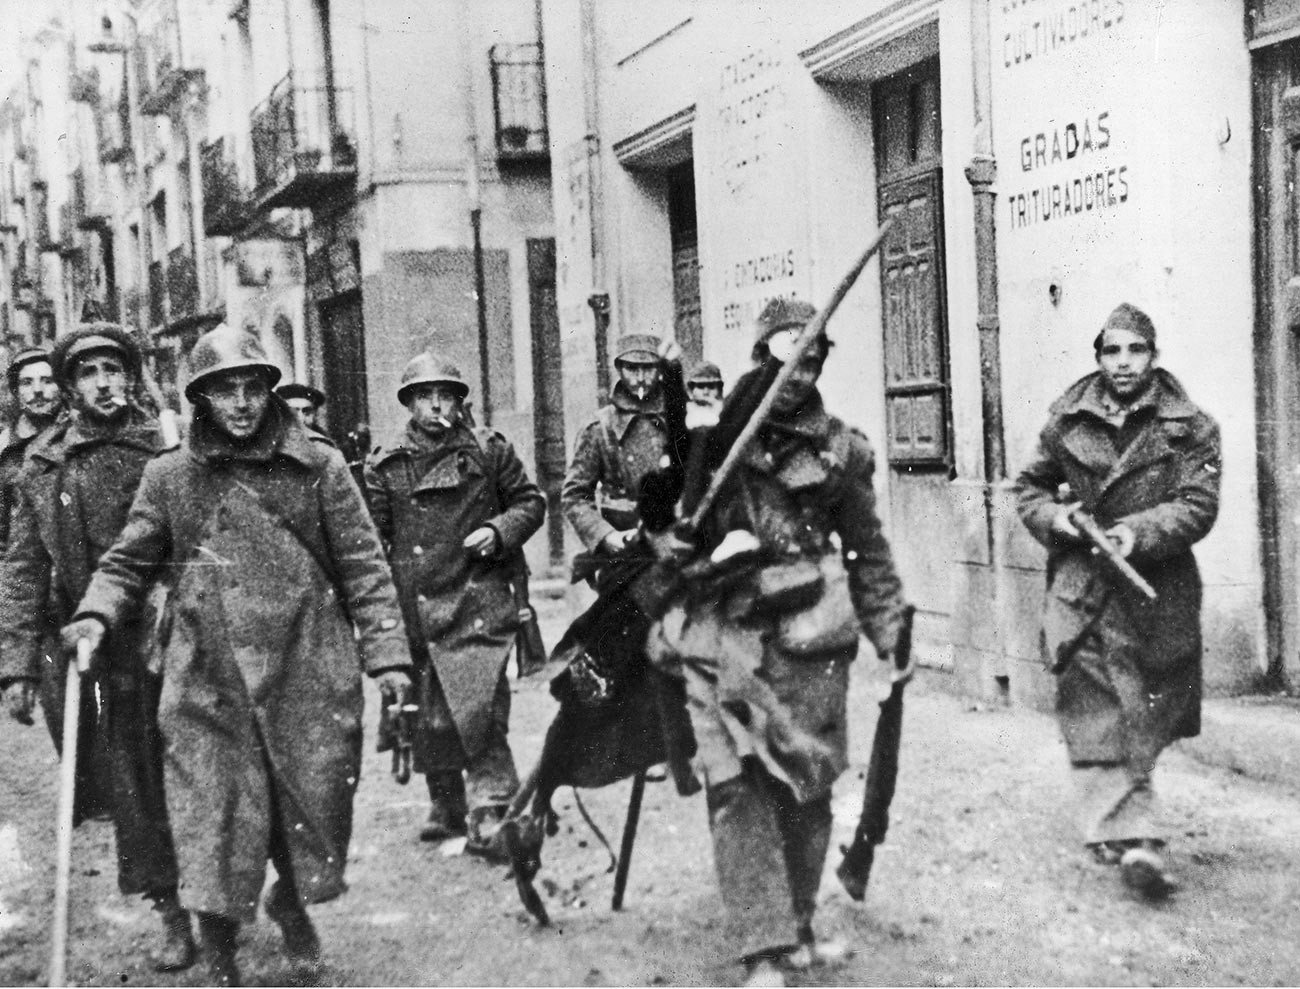 Републикански войници по улиците на Теруел, по време на завладяването на града